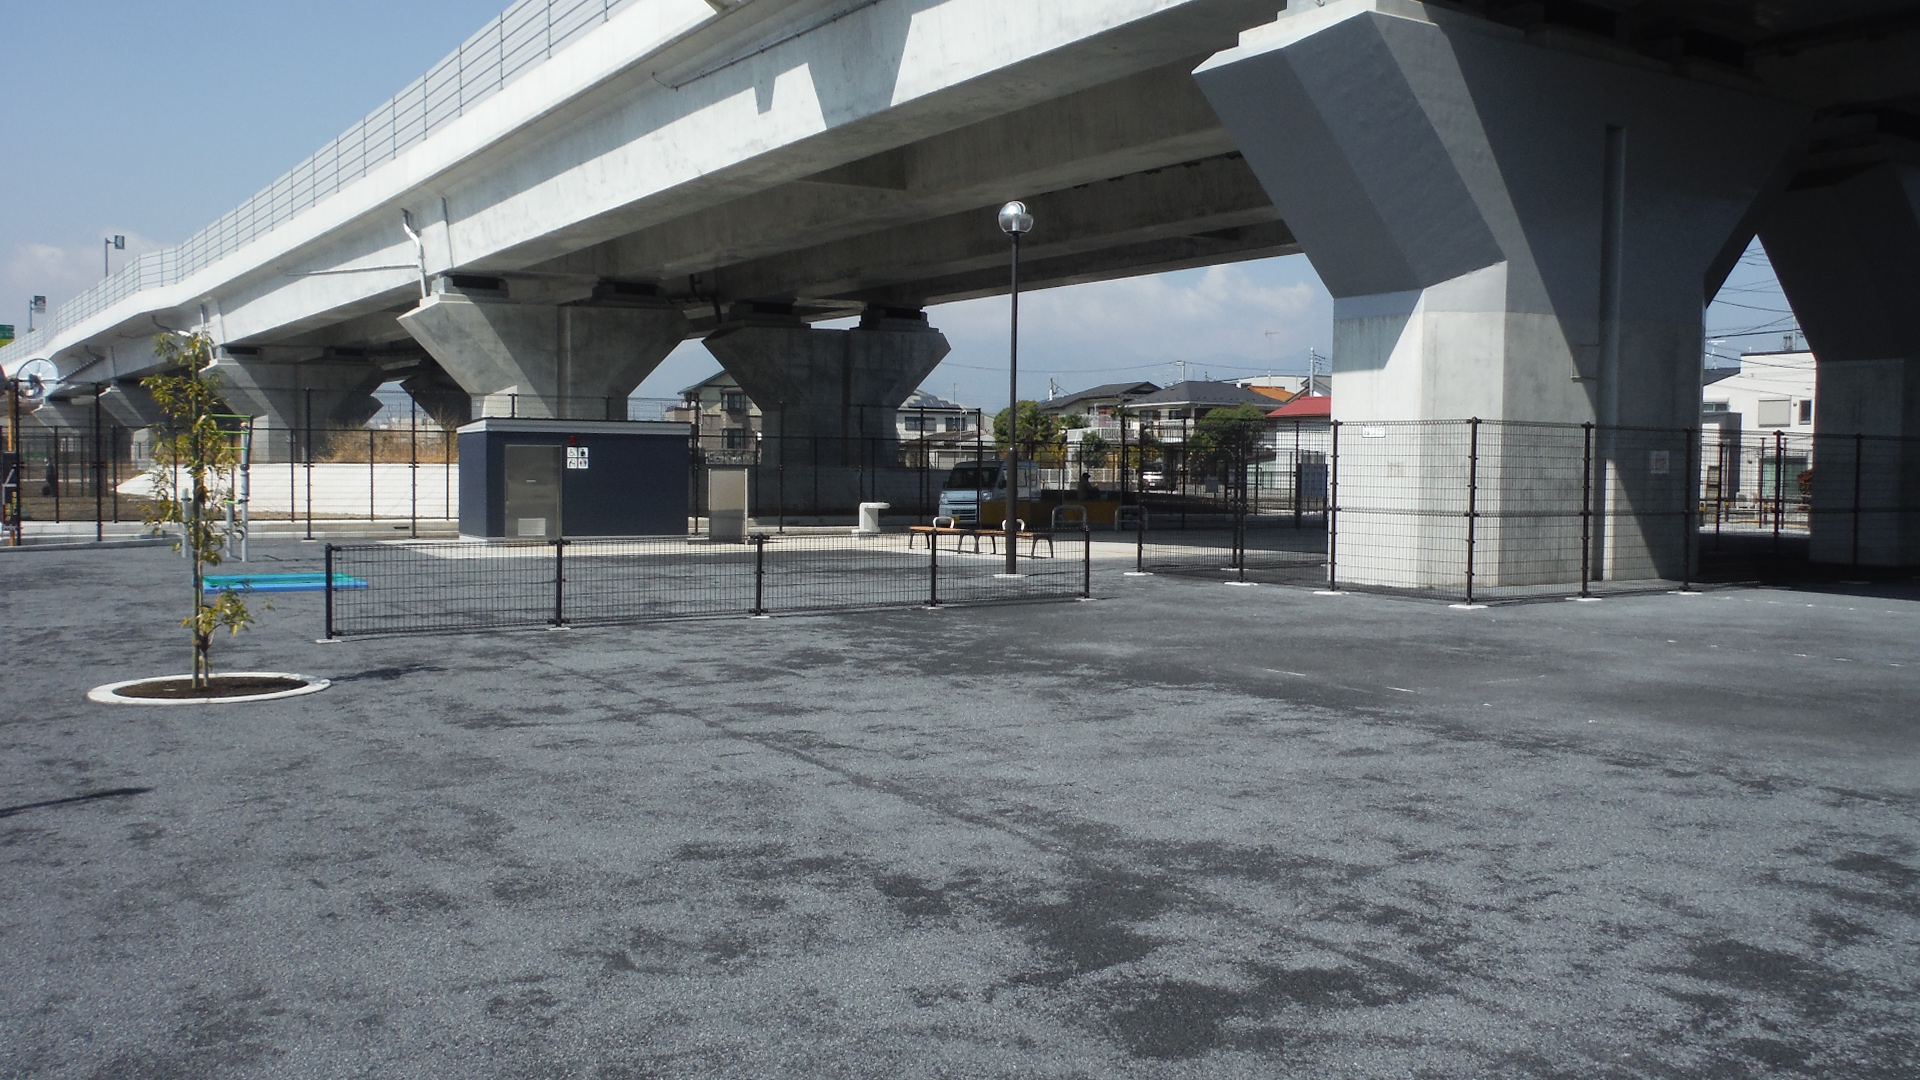 新東名高速道路の高架下に位置する広場の大きい公園です。